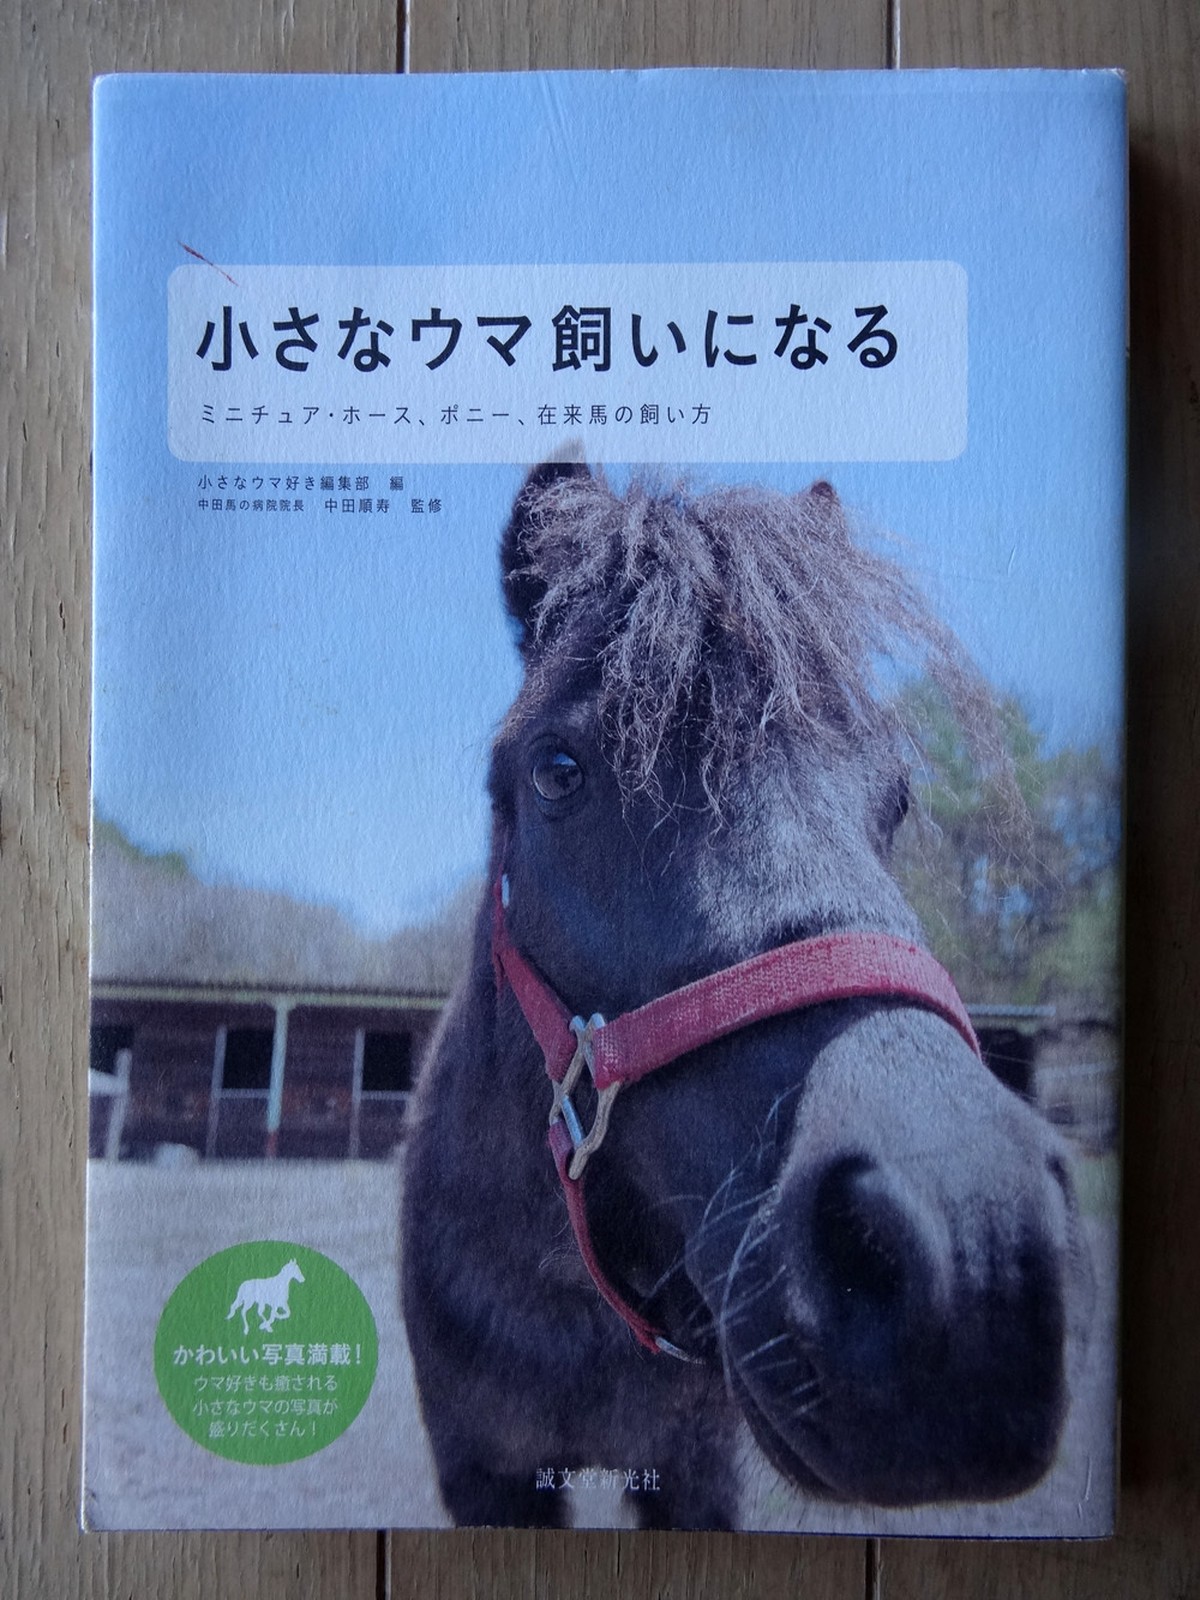 書籍 小さなウマ飼いになる ミニチュア ホース ポニー 在来馬の飼い方 長崎の対州馬 ひん太 商店